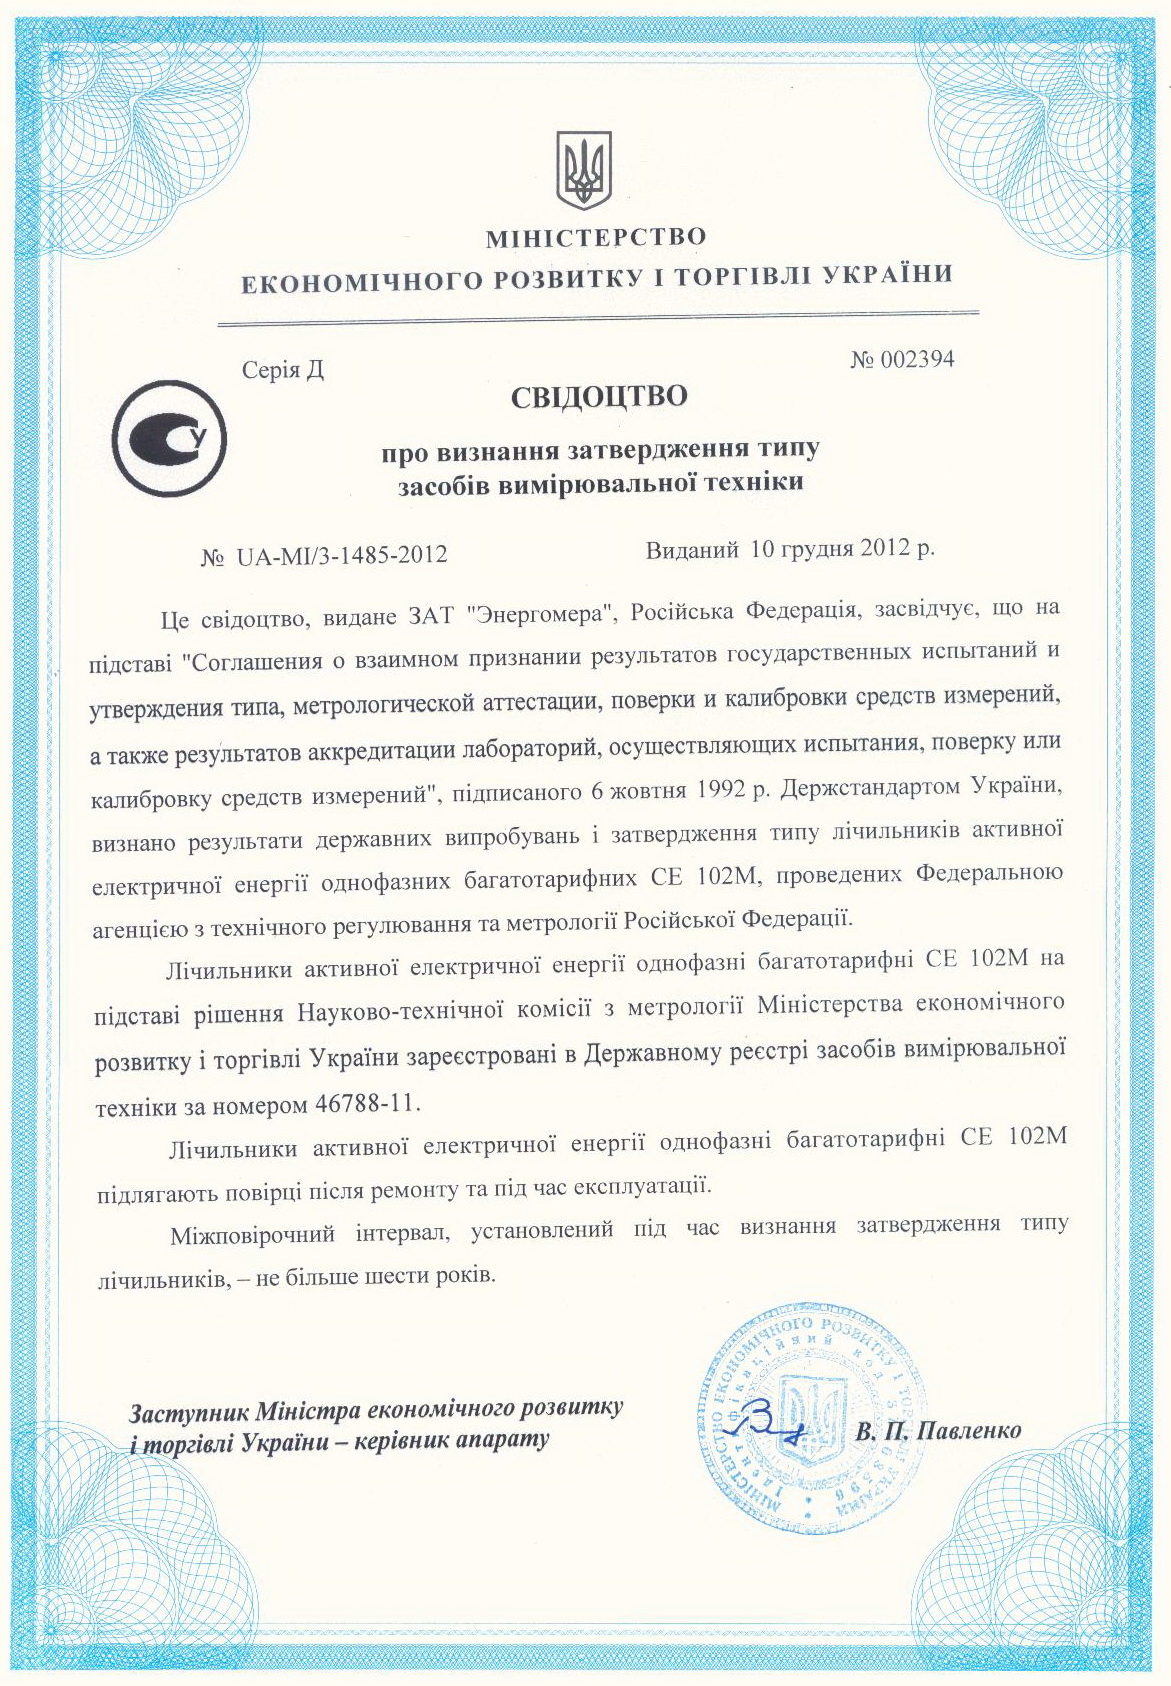 Сертификат на электросчетчик CE102